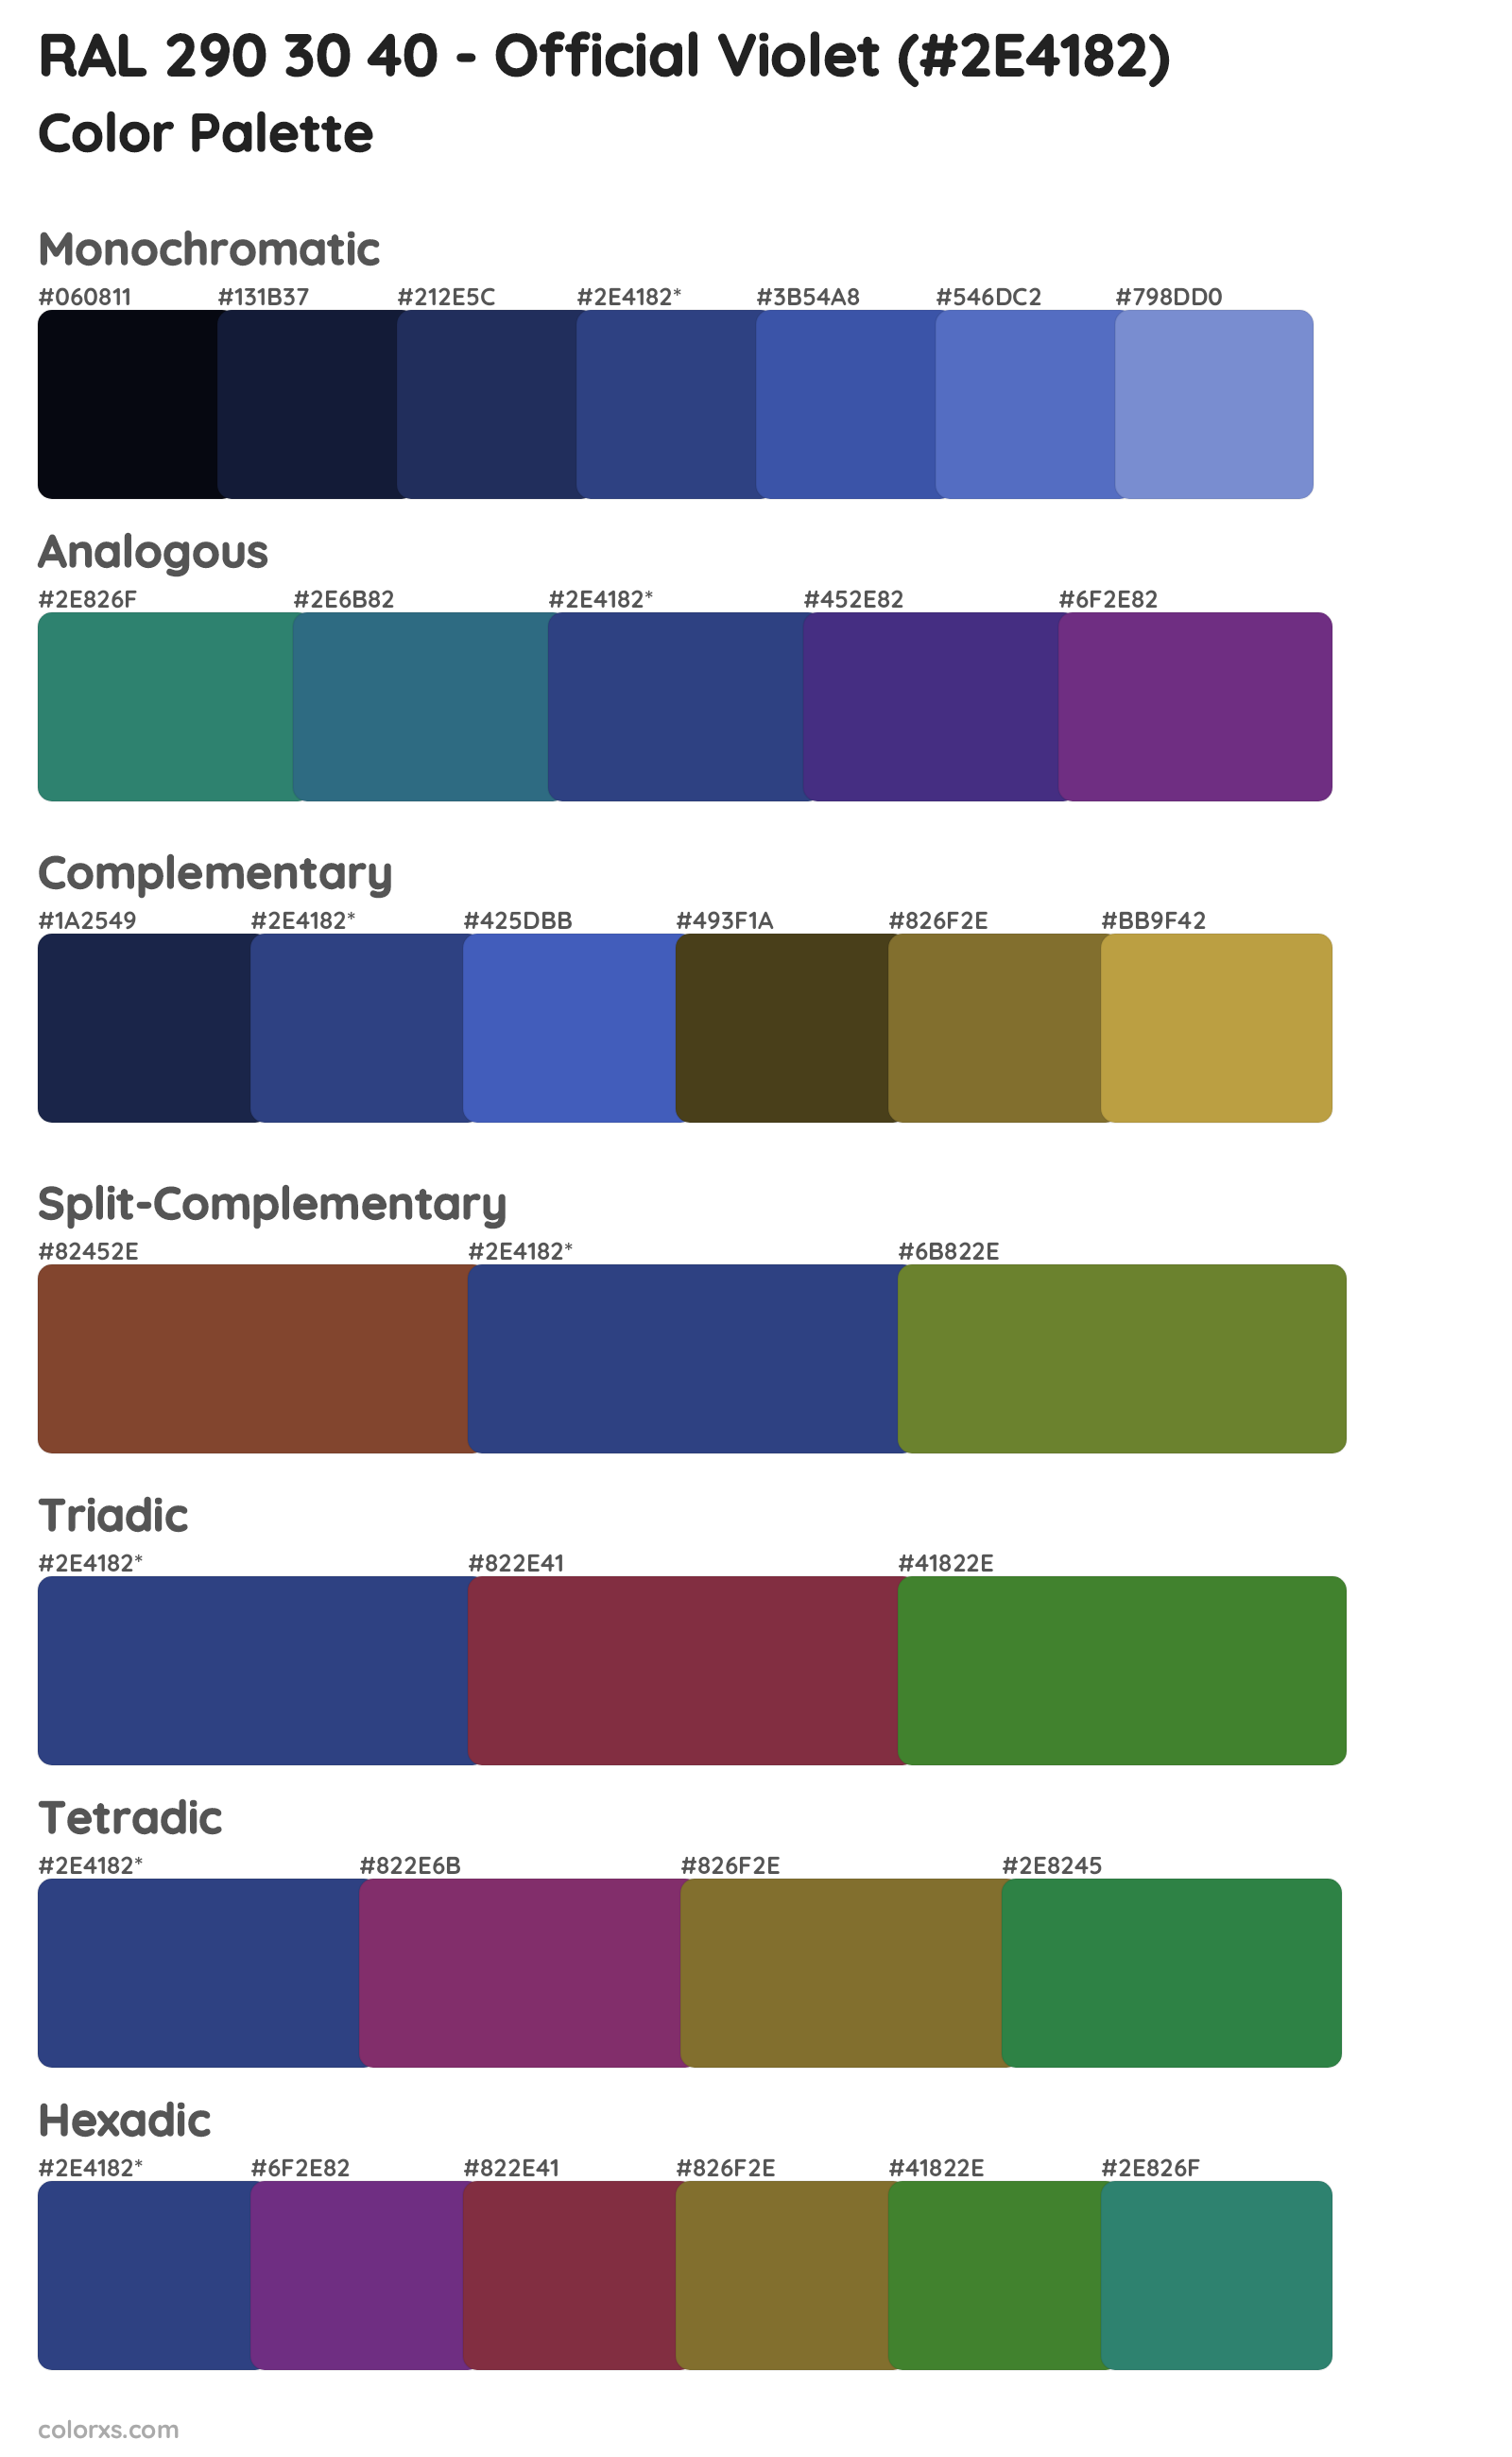 RAL 290 30 40 - Official Violet Color Scheme Palettes